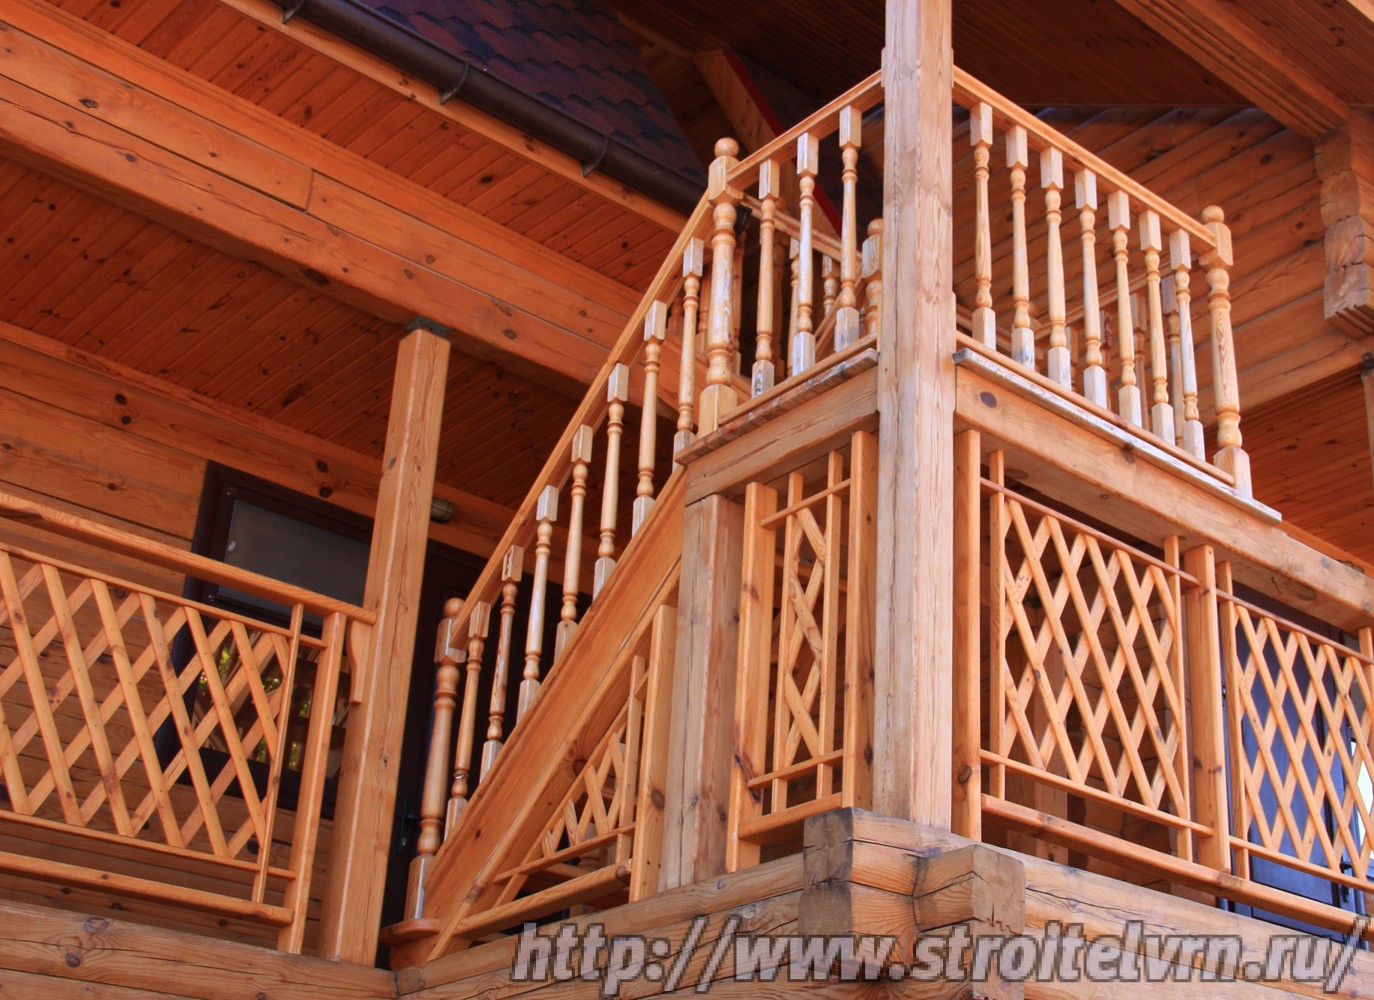 Строительство деревянного дома, общий вид и фрагменты.